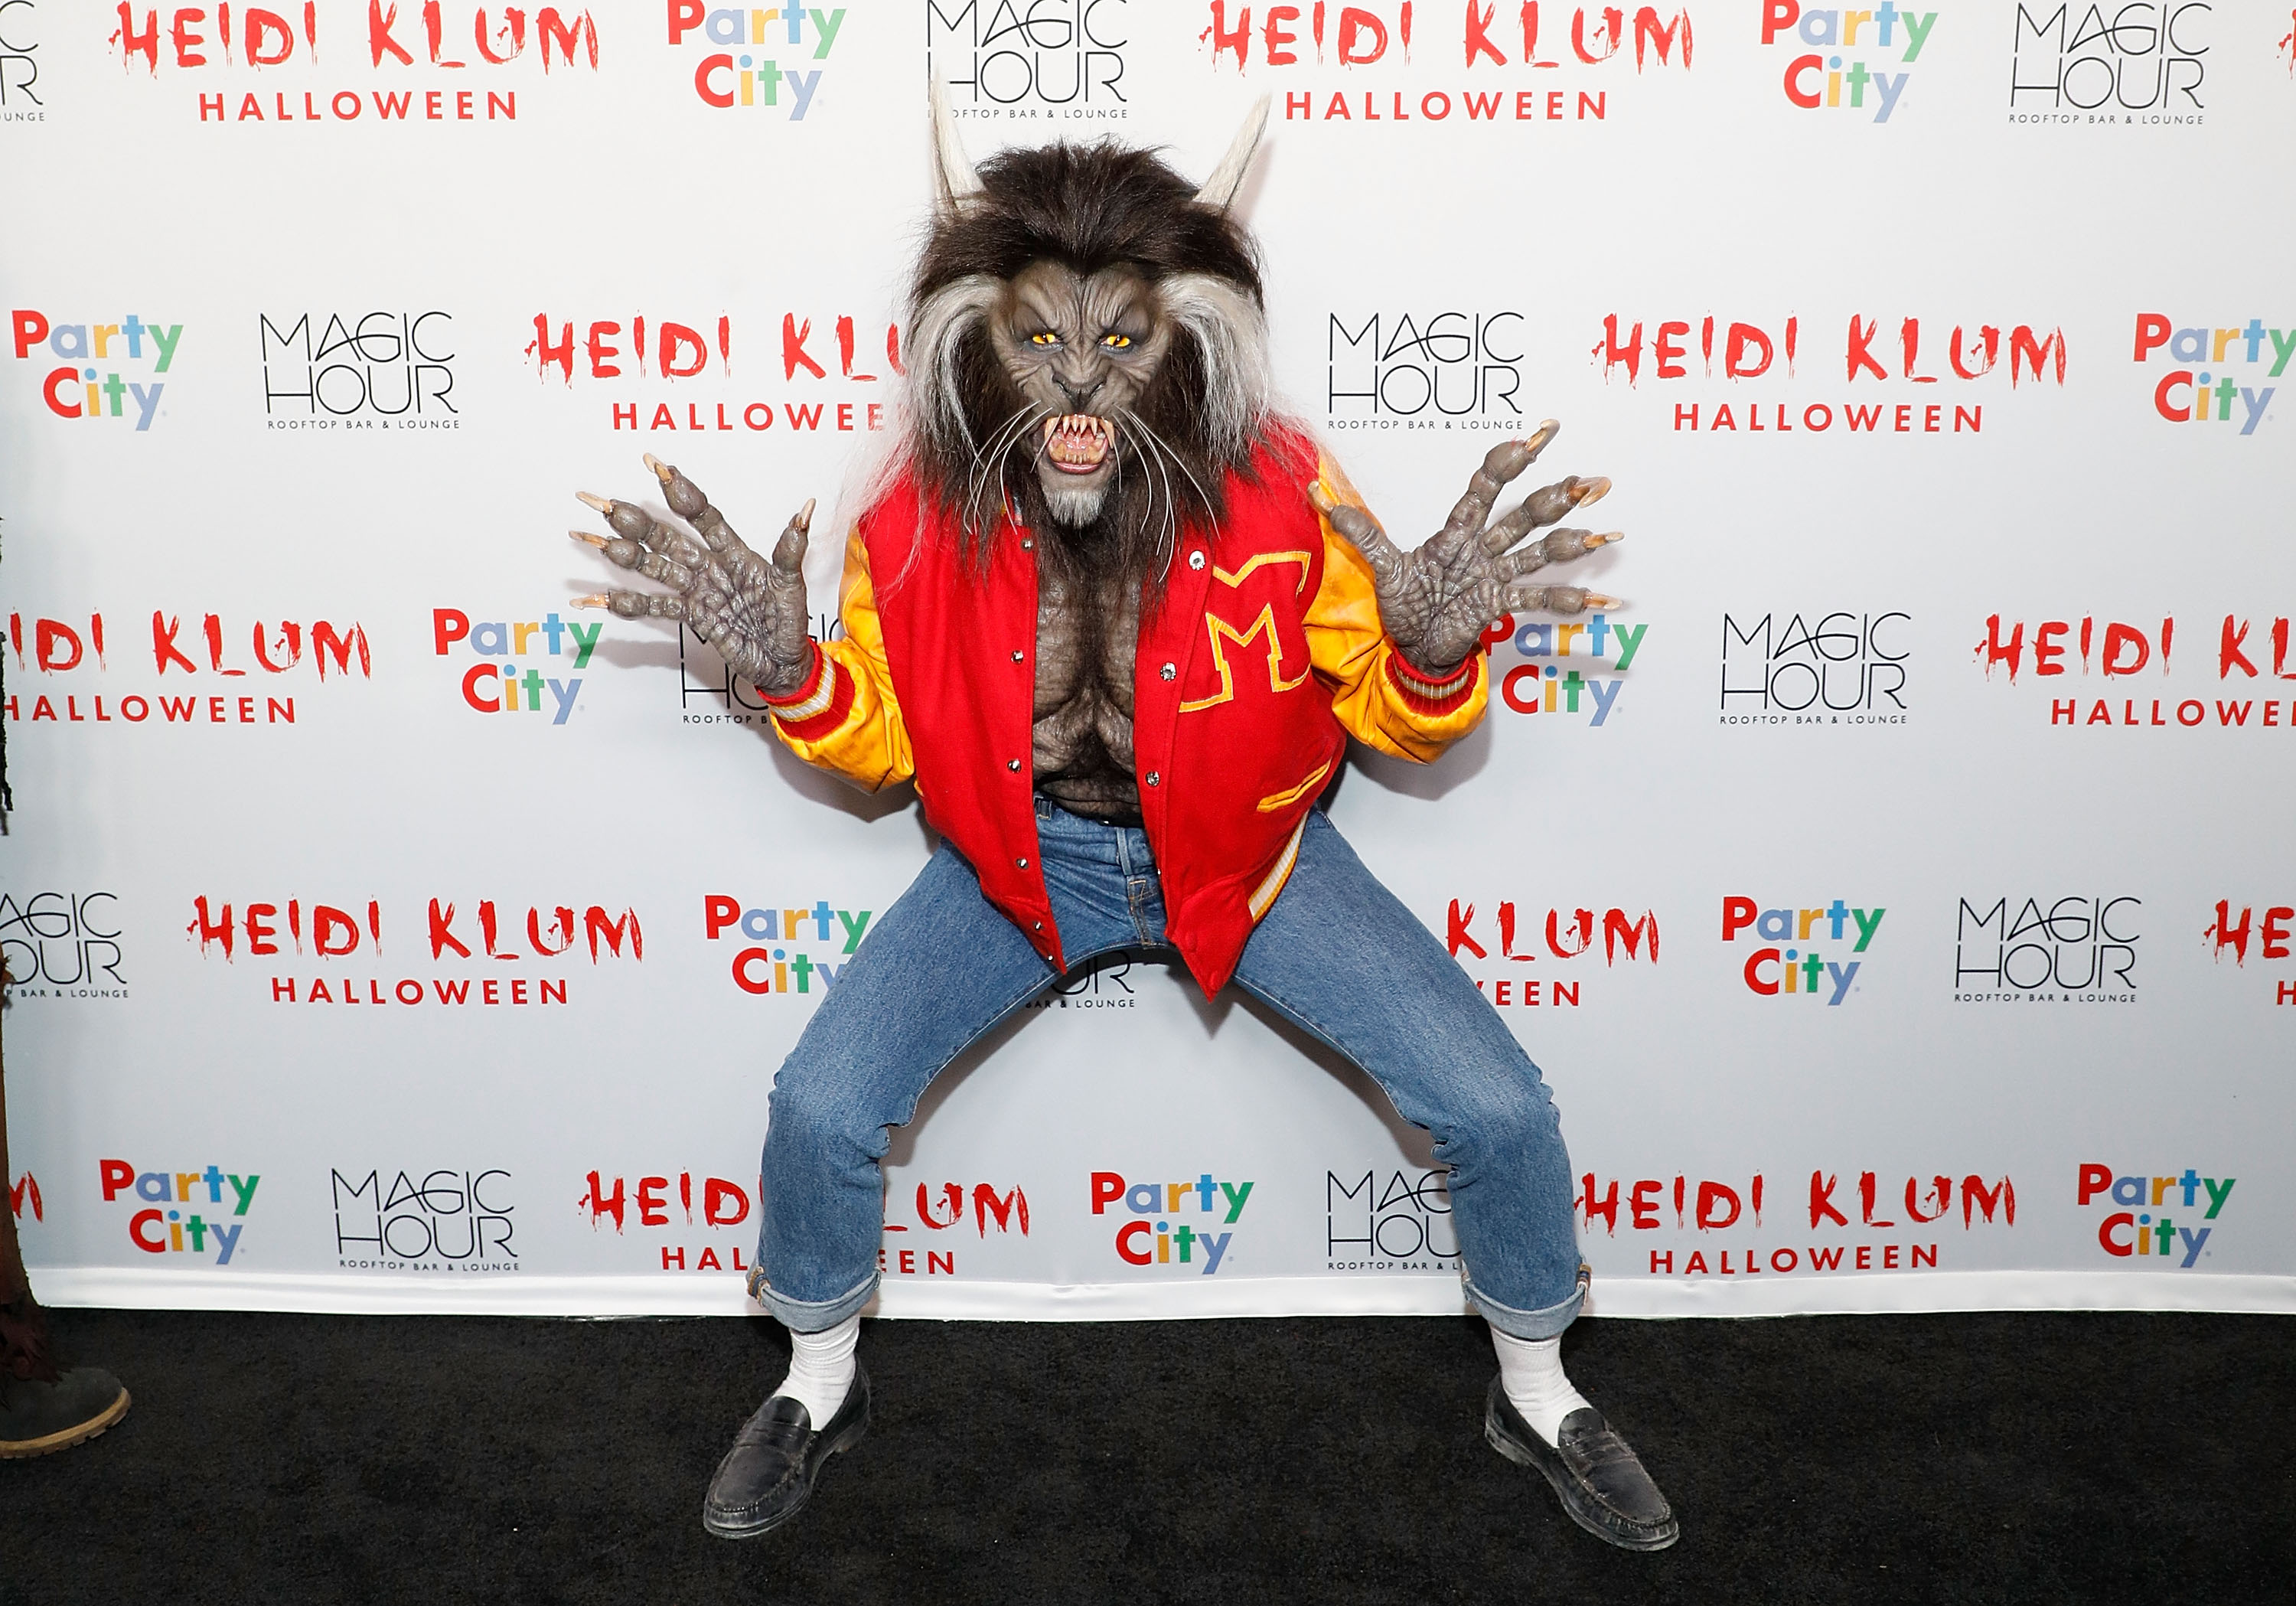 Heidi Klum attends Heidi Klum's 18th Annual Halloween Party.